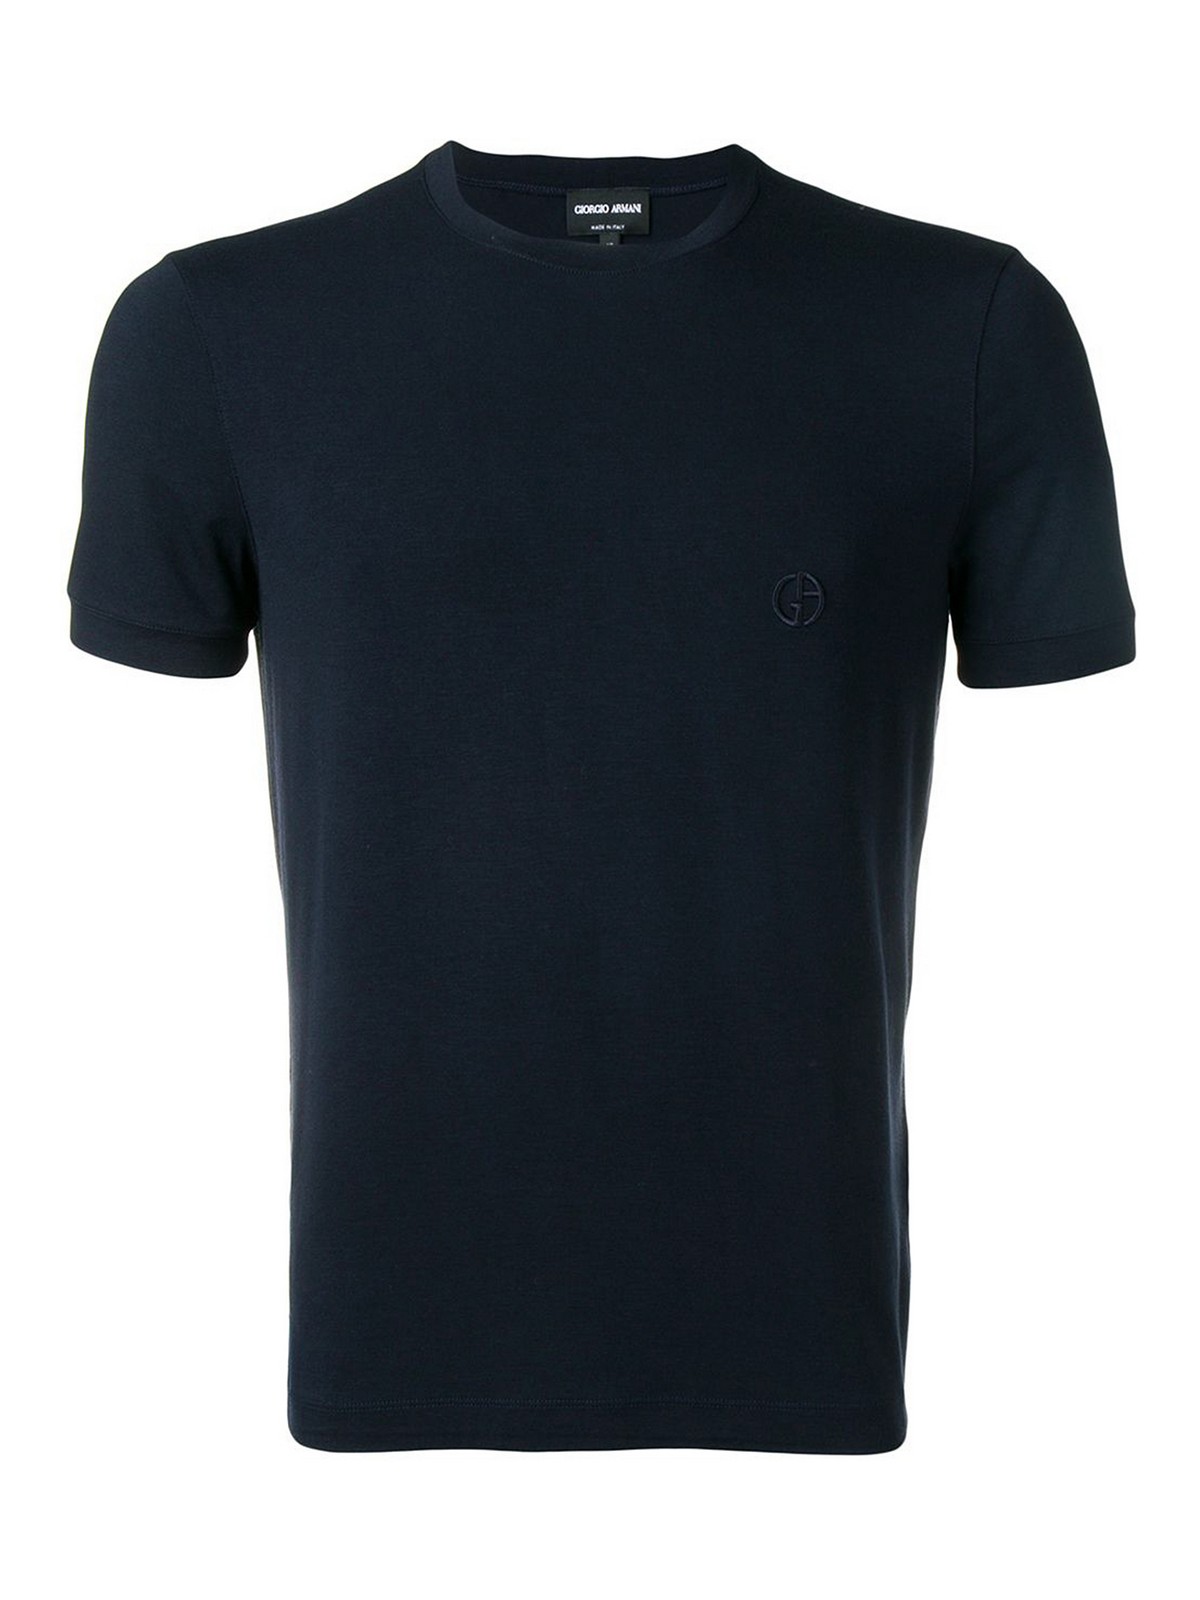 Giorgio Armani Embroidered Logo T-Shirt - Blue - 52